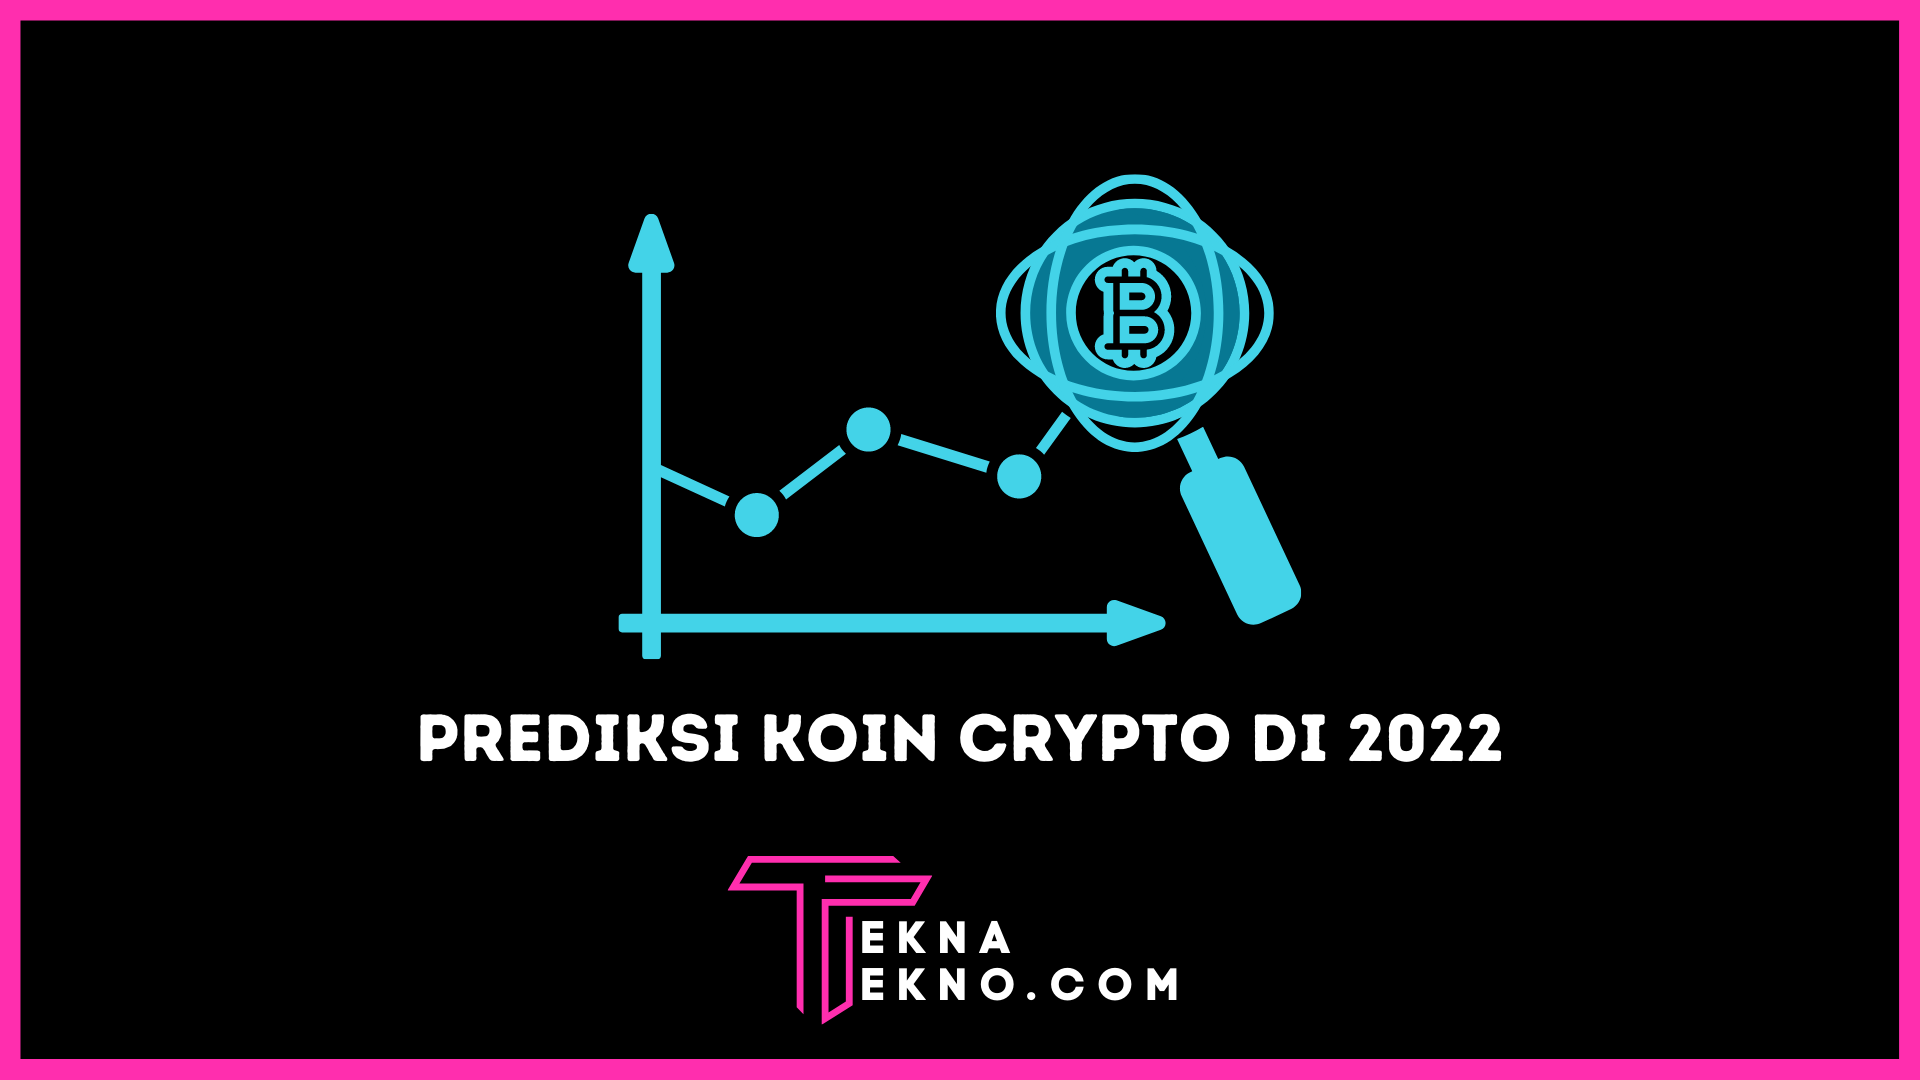 Prediksi Koin Crypto yang Akan Naik 2022, Simak Disini